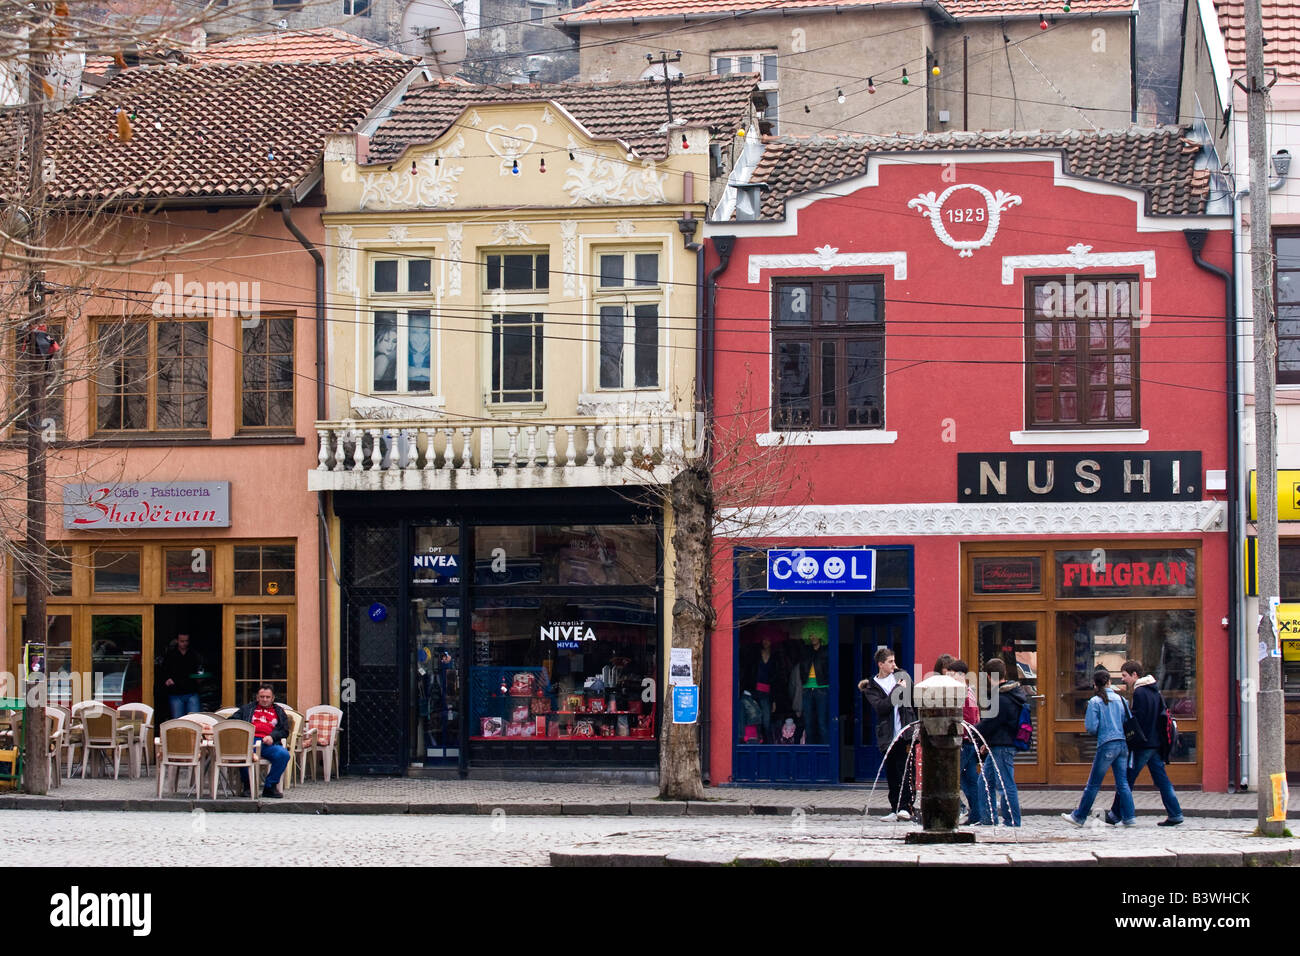 Ripristinate vecchie case nel centro di Prizren, in Kosovo. Prizren è del Kosovo e storica capitale culturale. Foto Stock